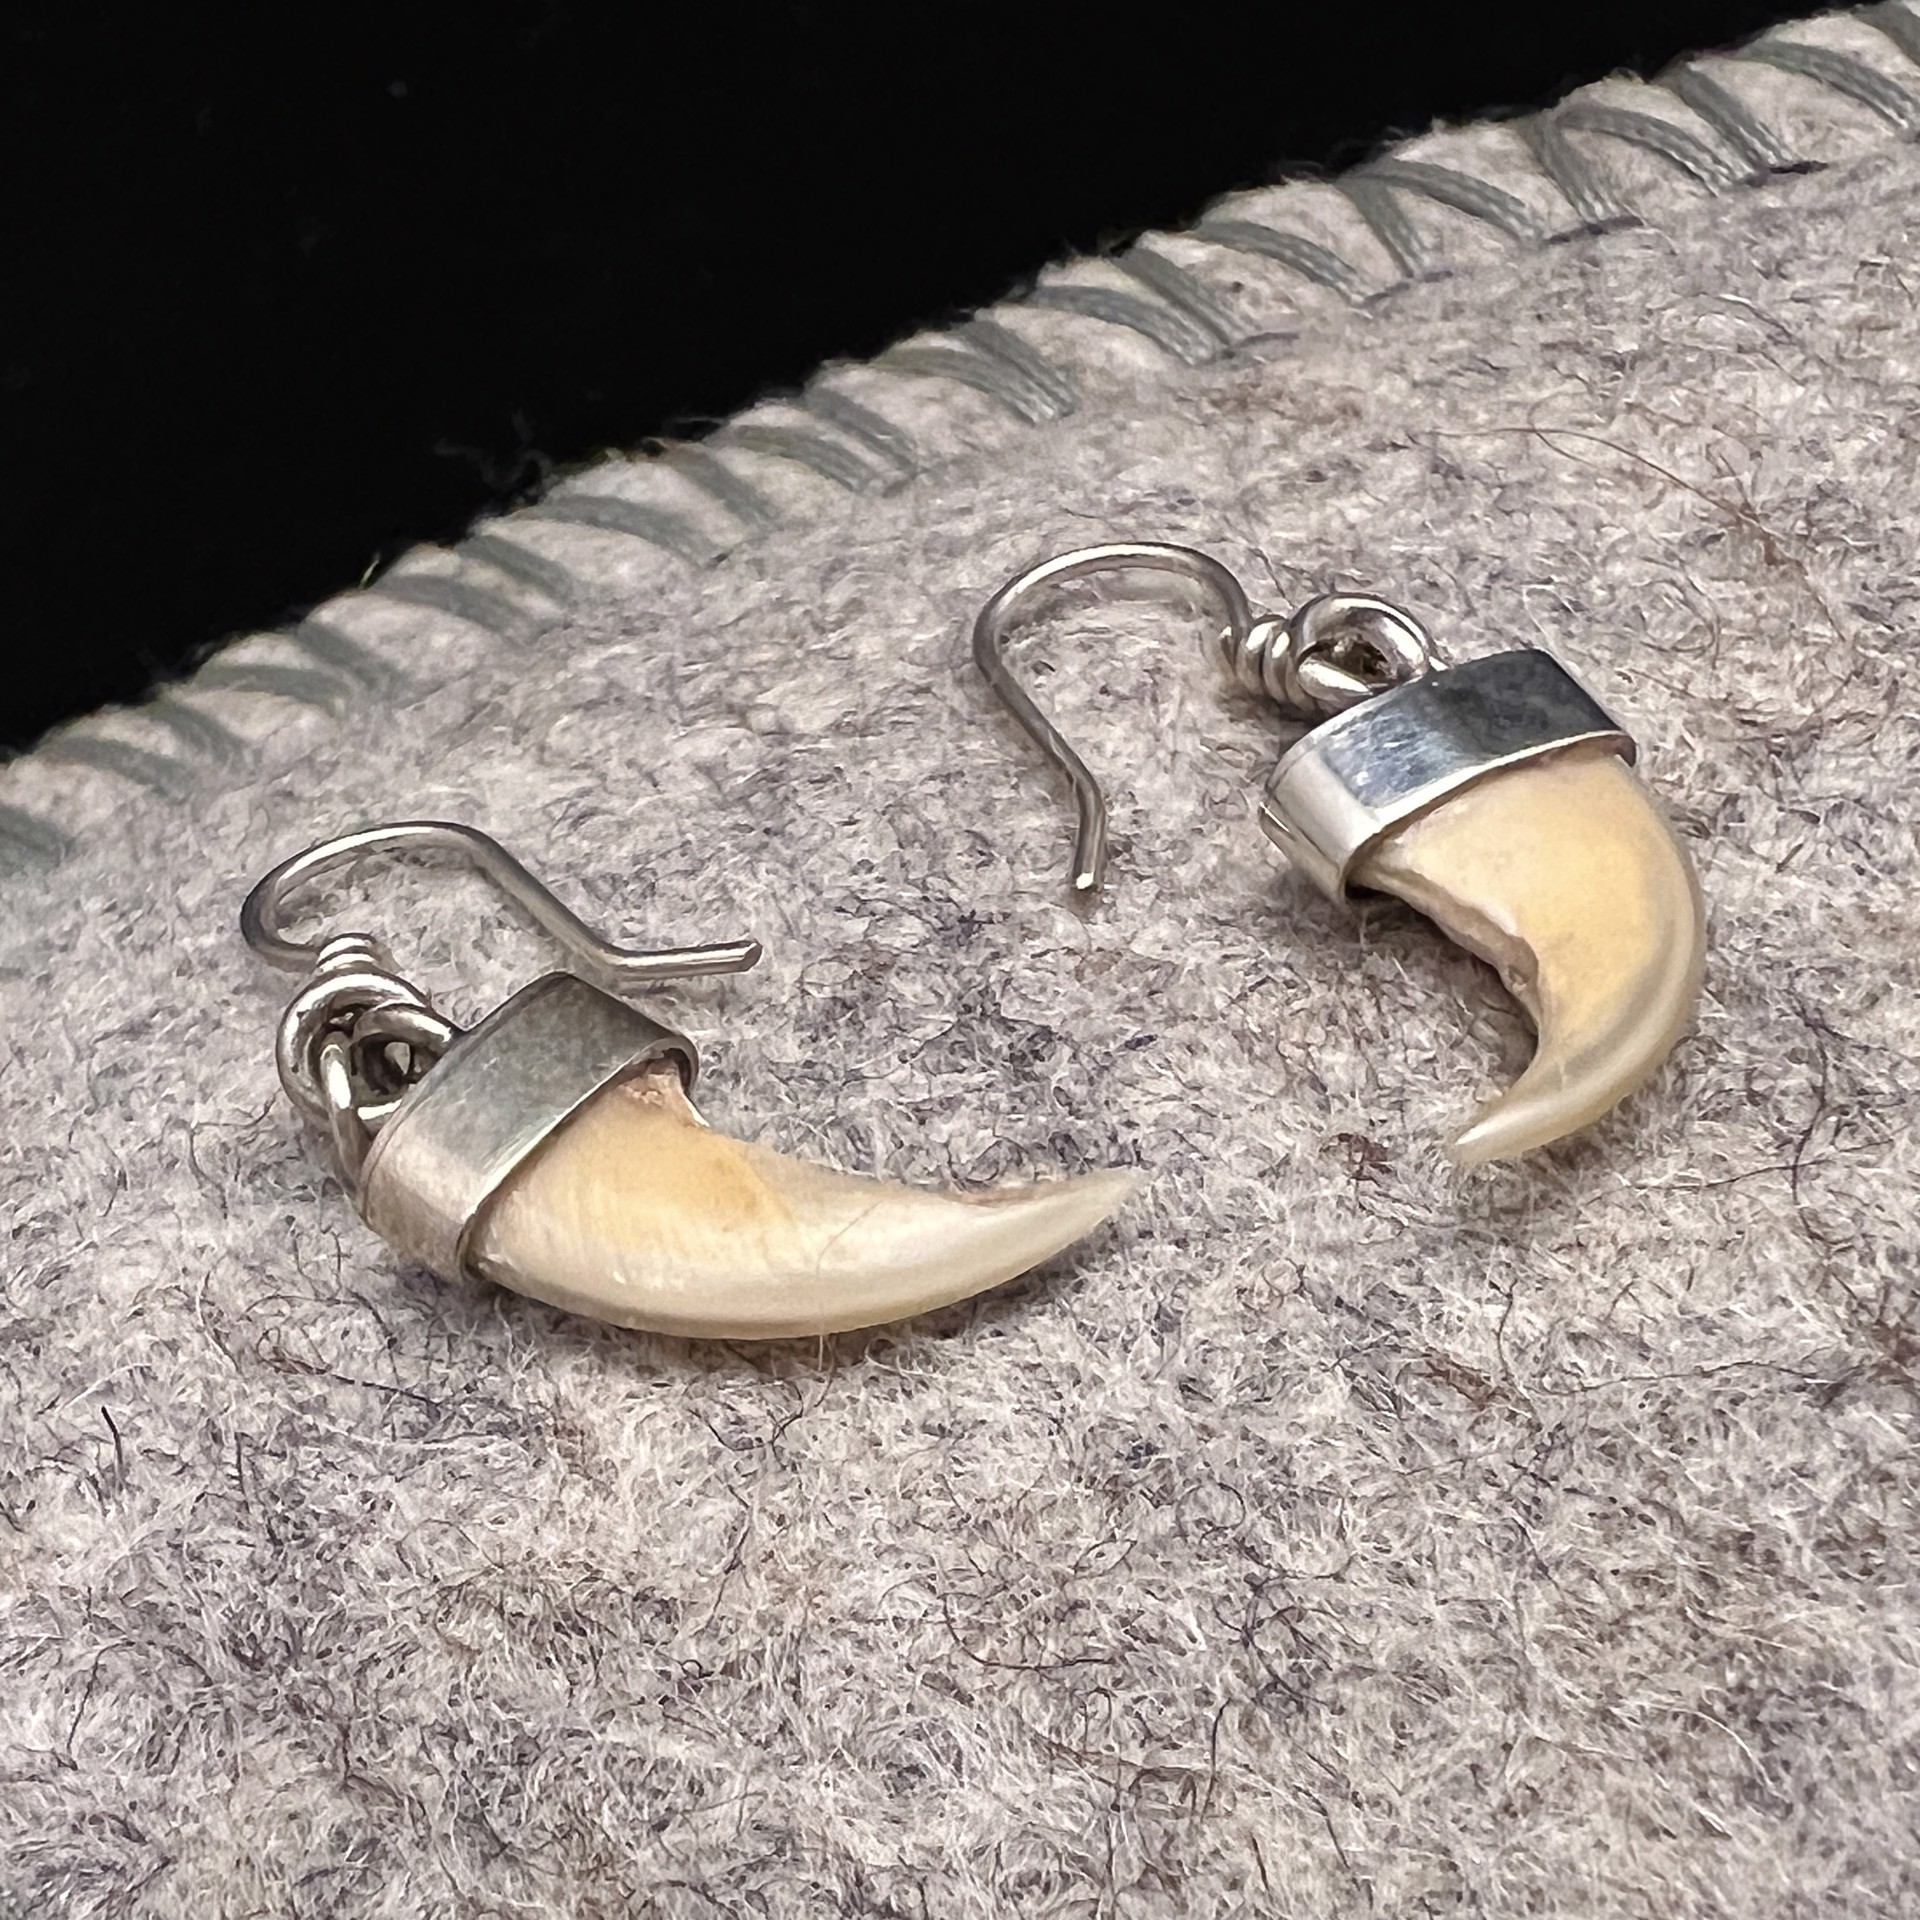 Bobcat Claw Earrings by Rex Foster